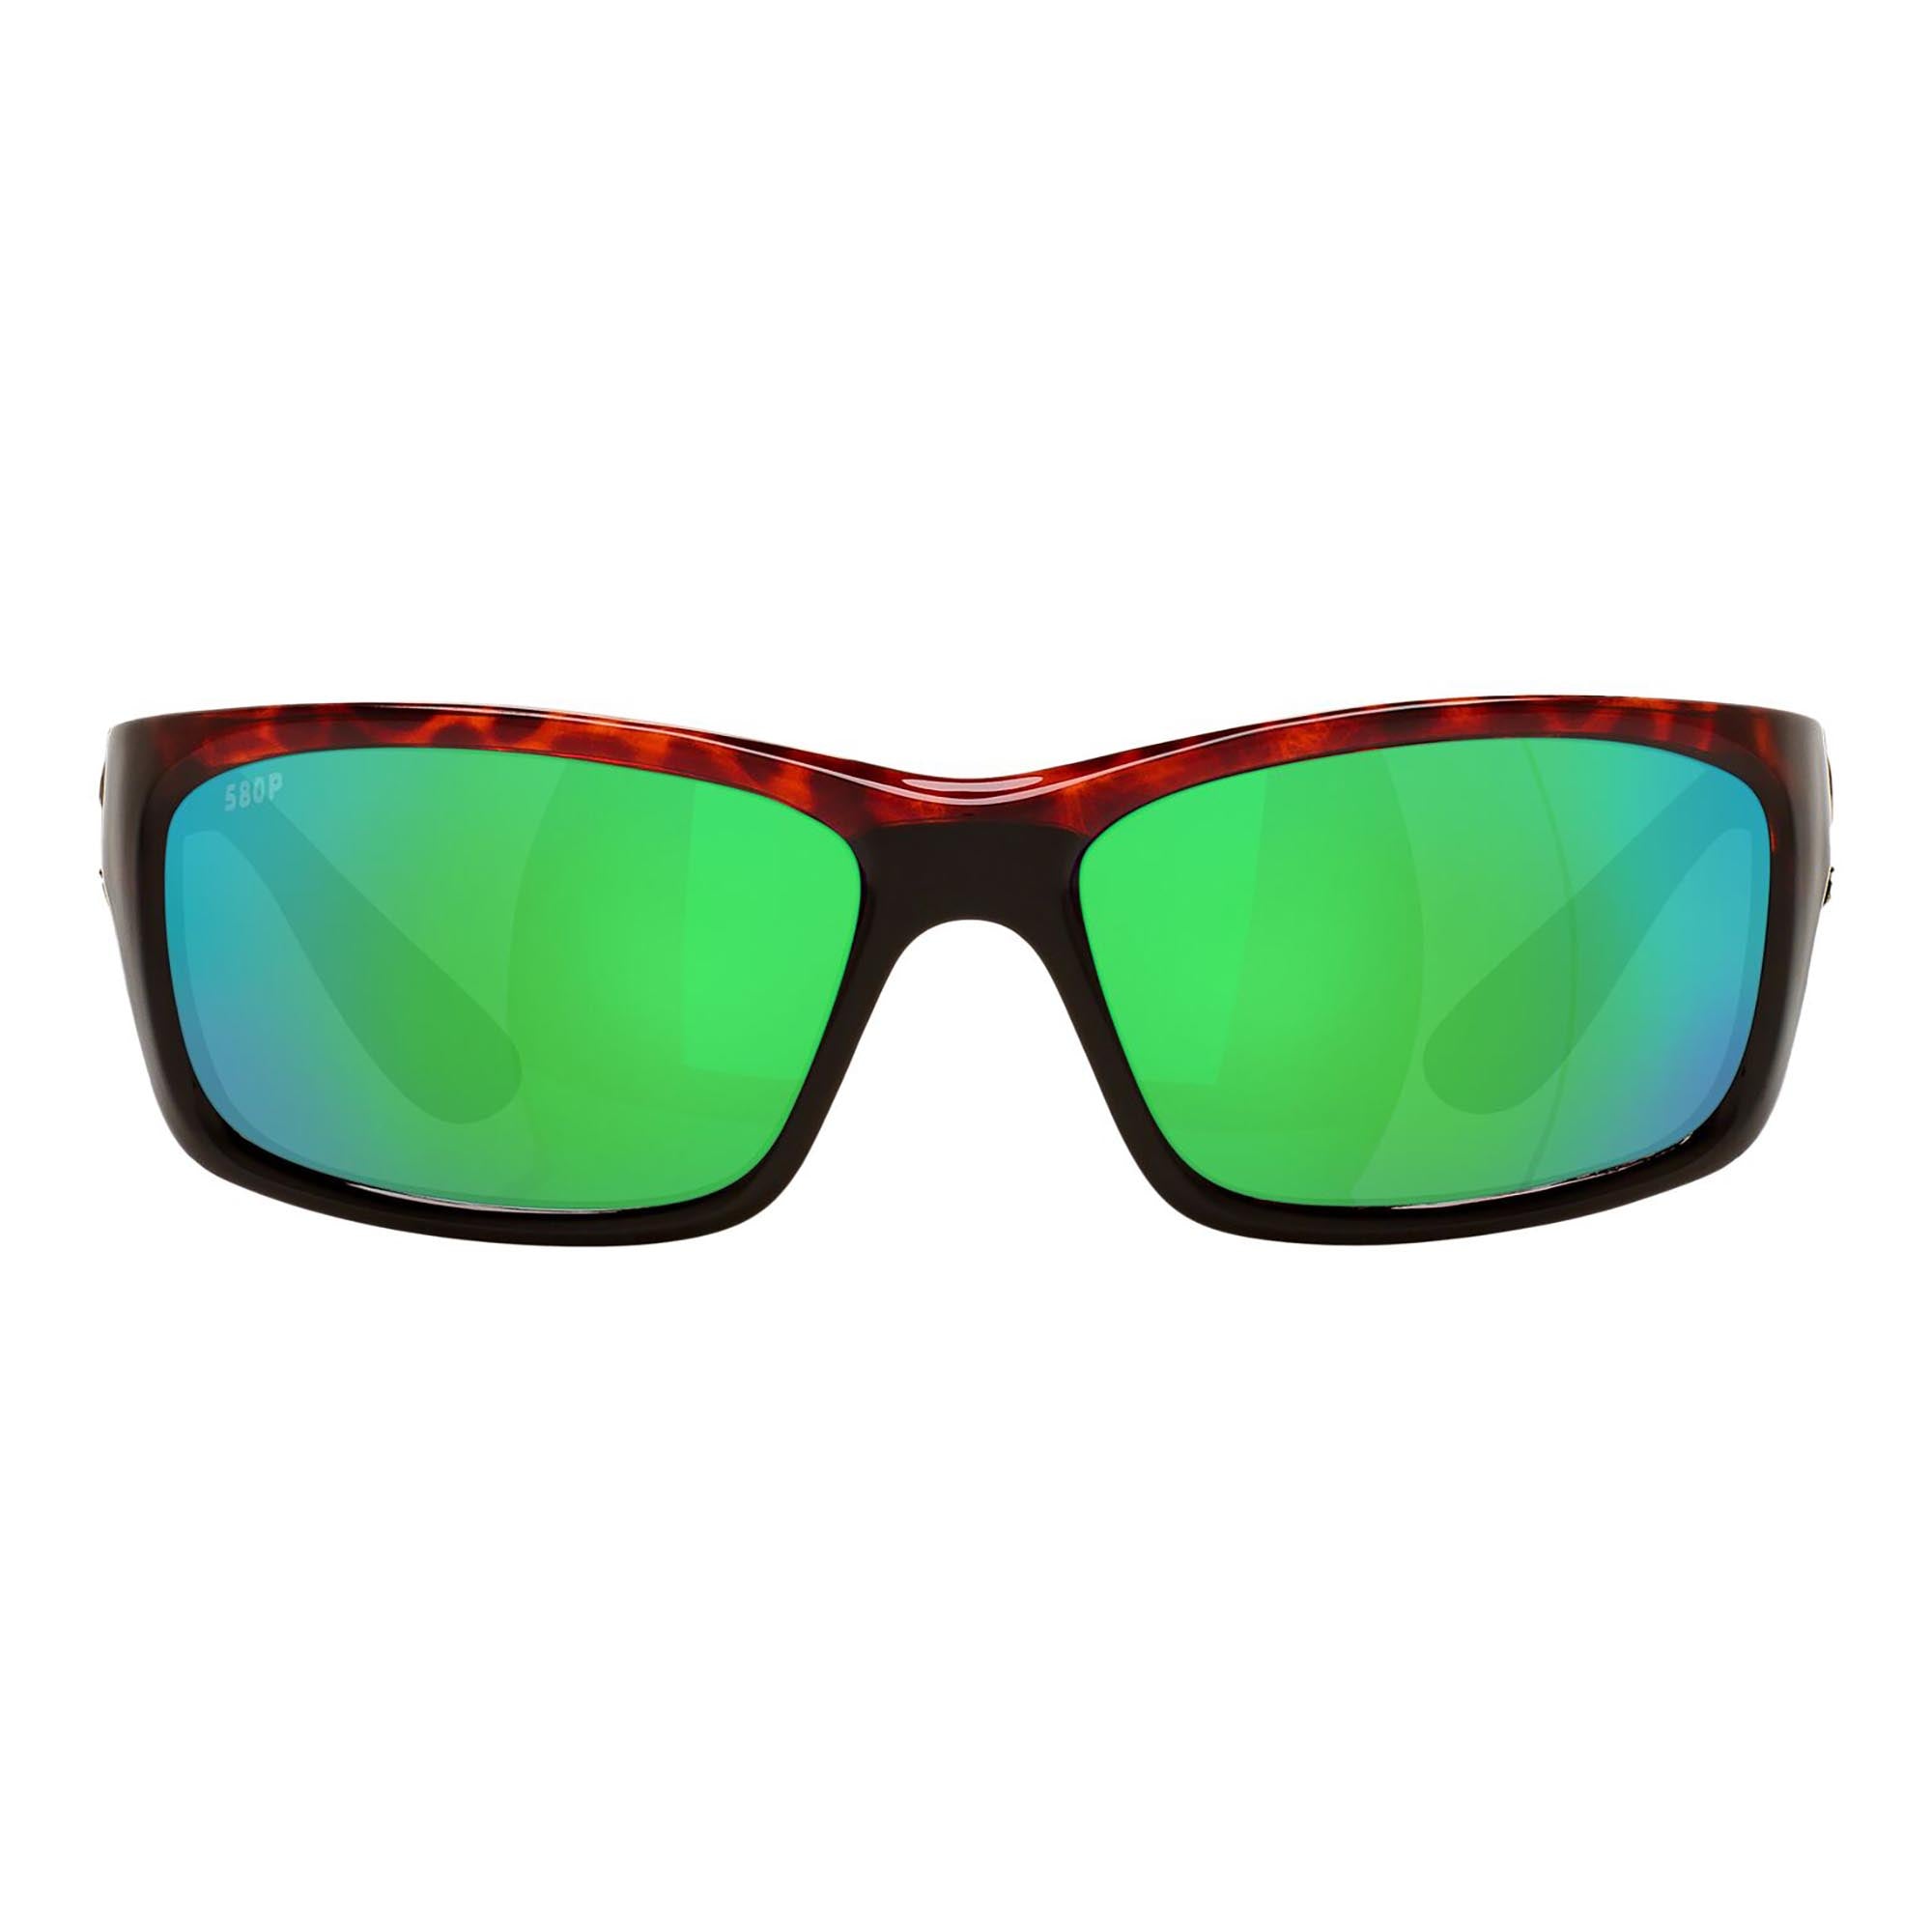 Costa Del Mar Jose Sunglasses Tortoise / Green Mirror 580P